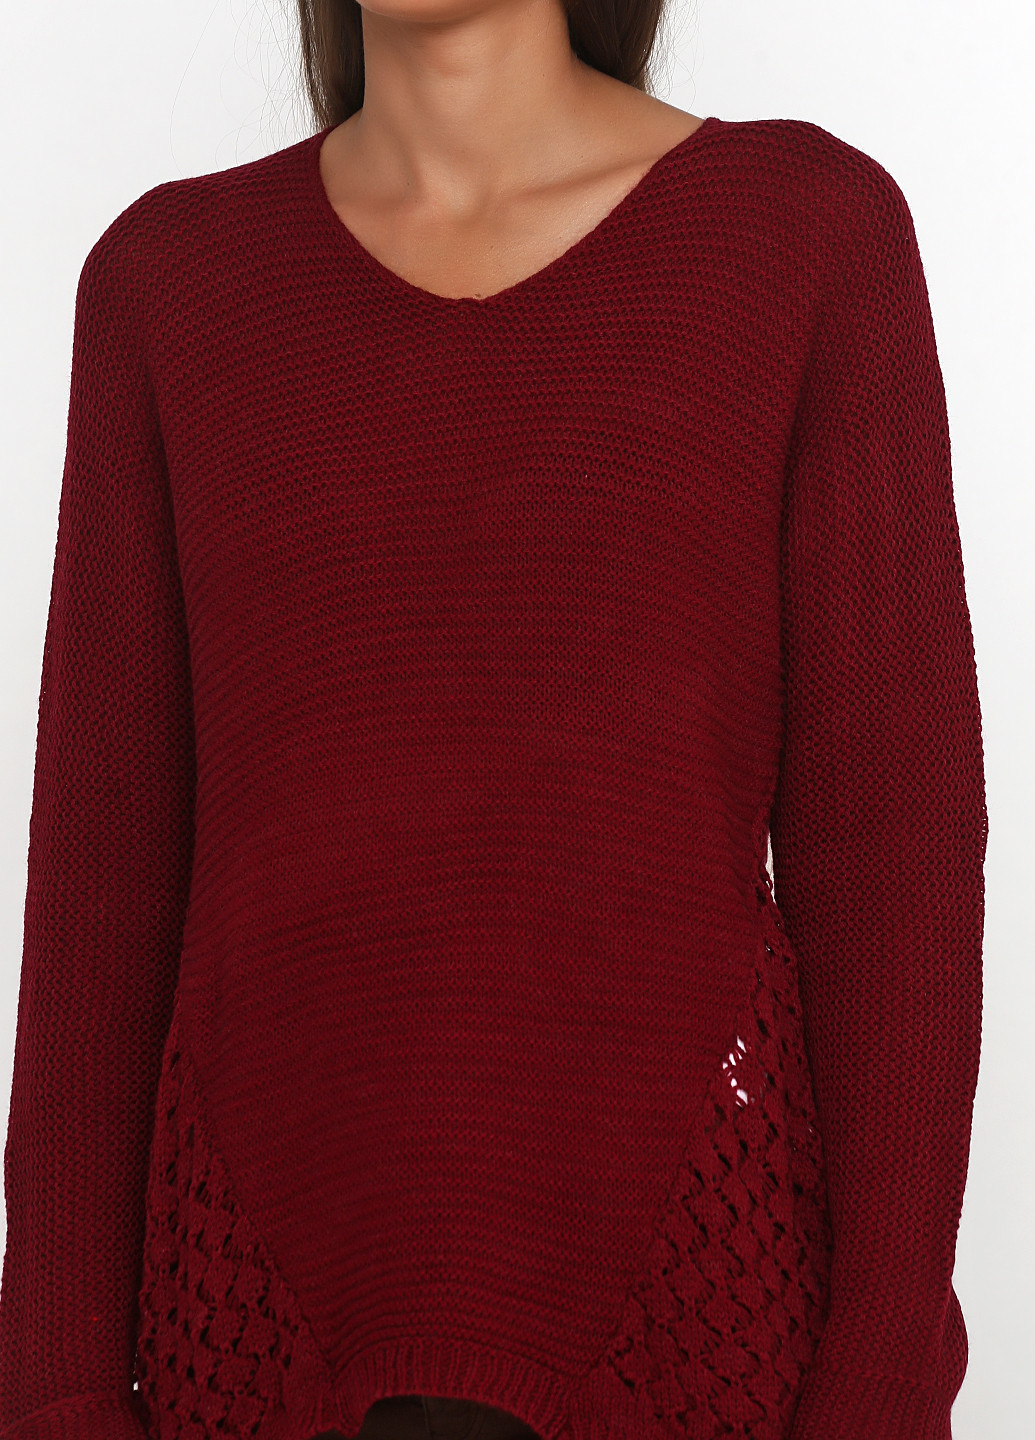 Бордовый демисезонный пуловер пуловер Divinka